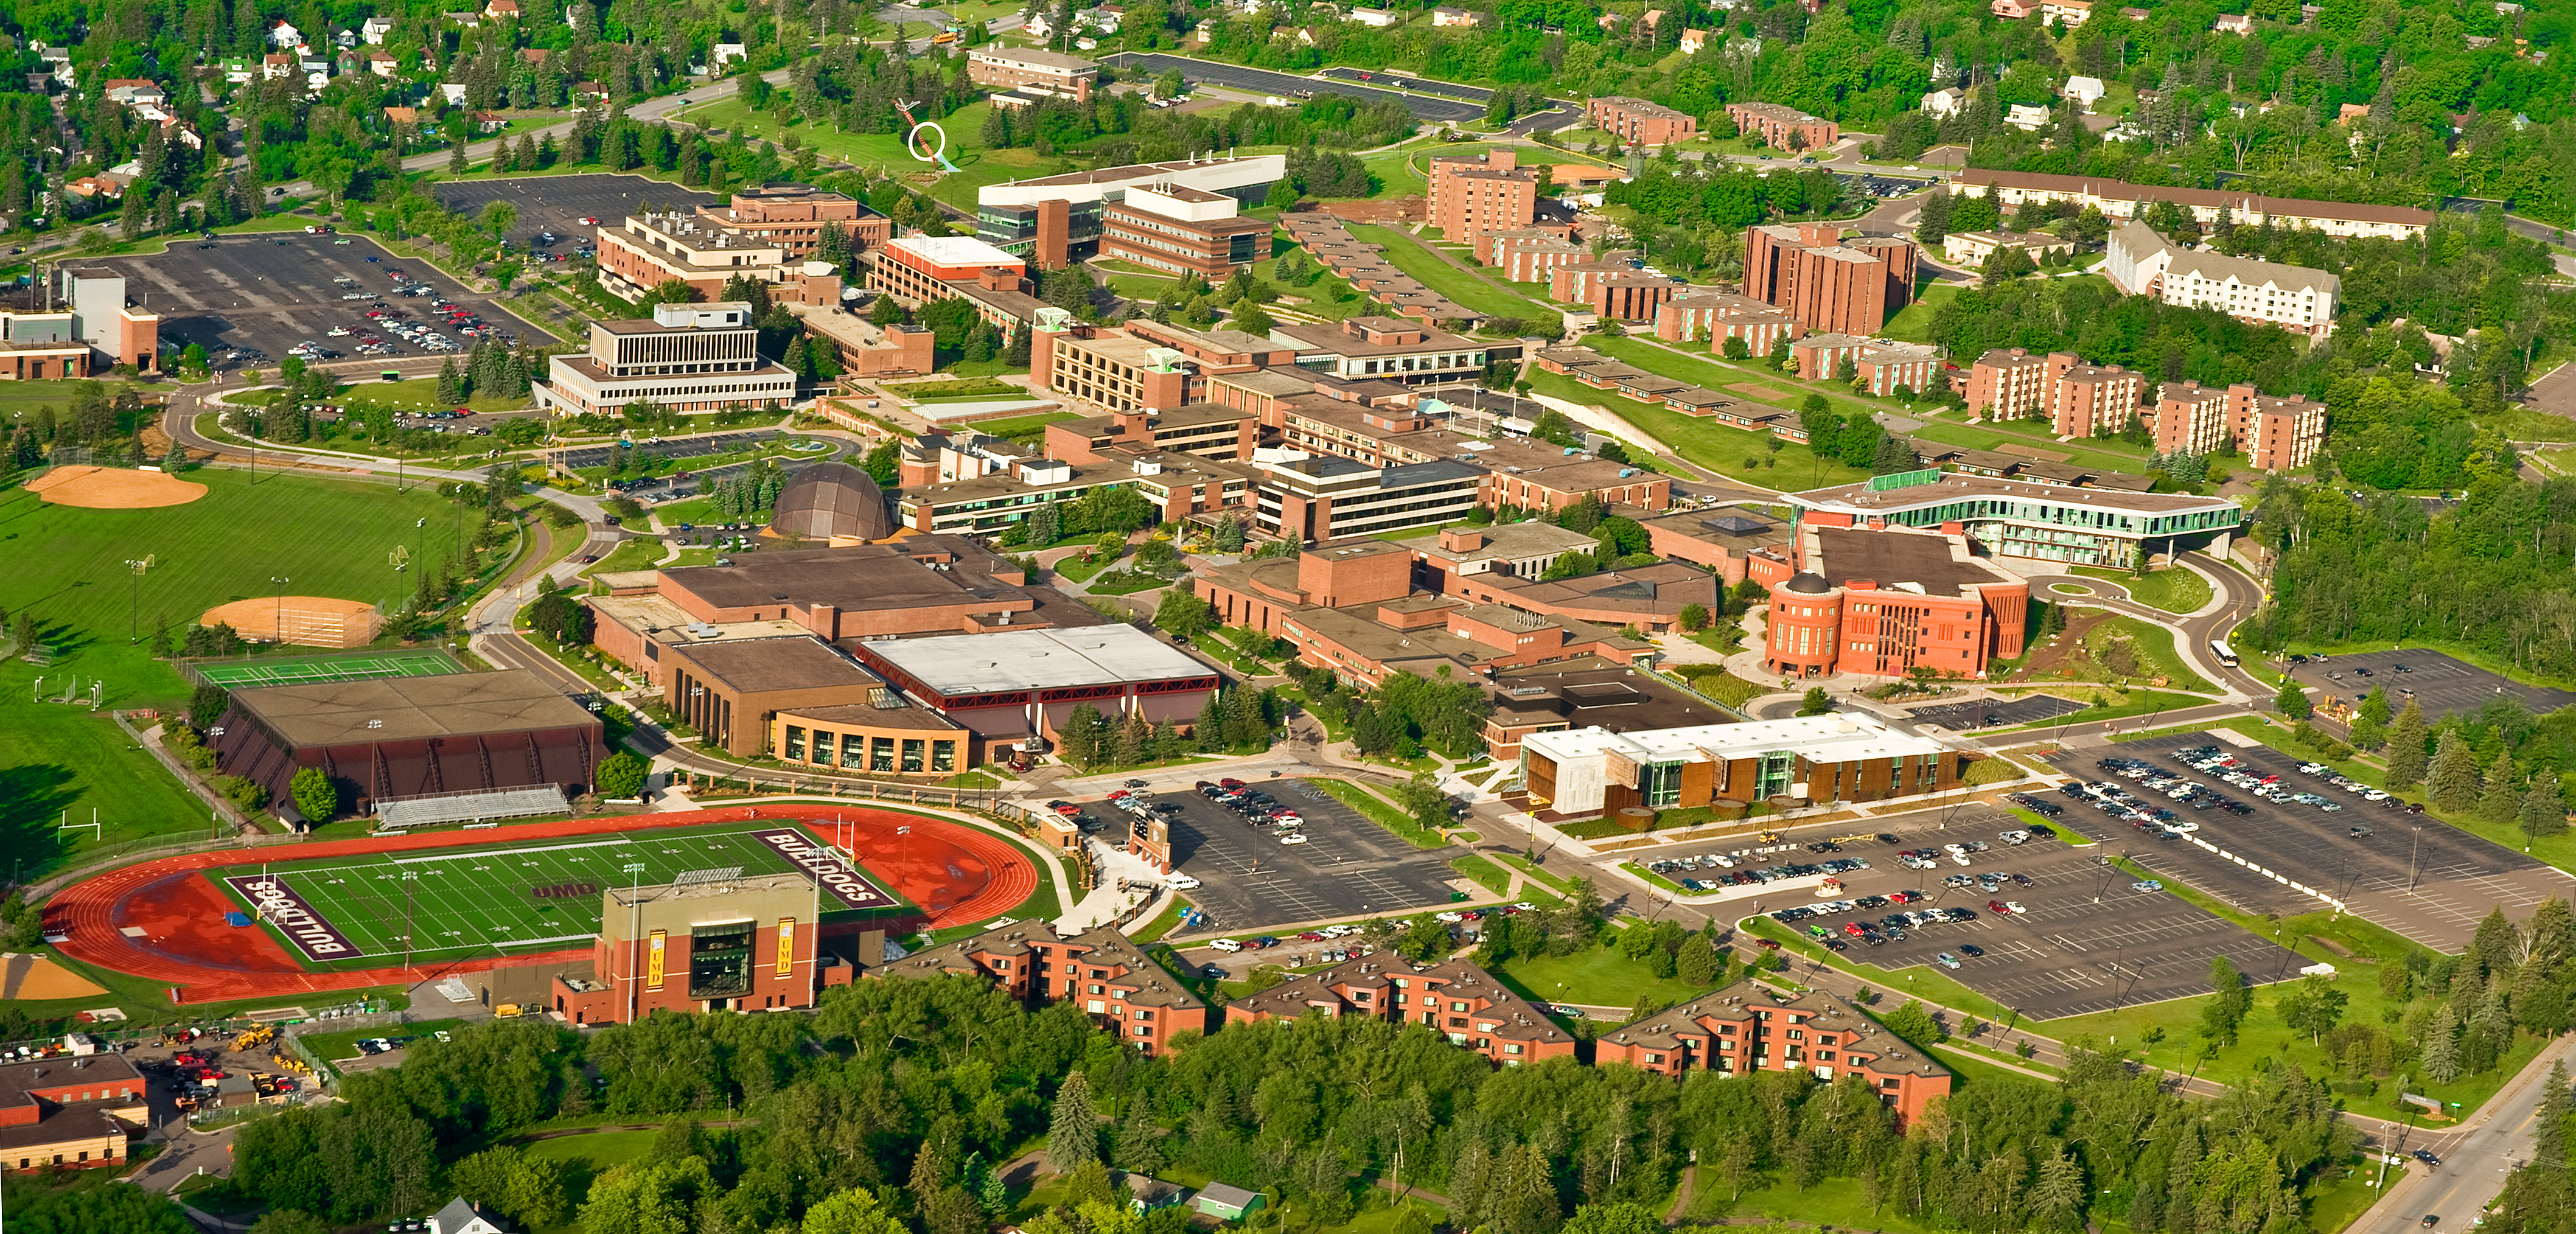 Aerial view of UMD campus